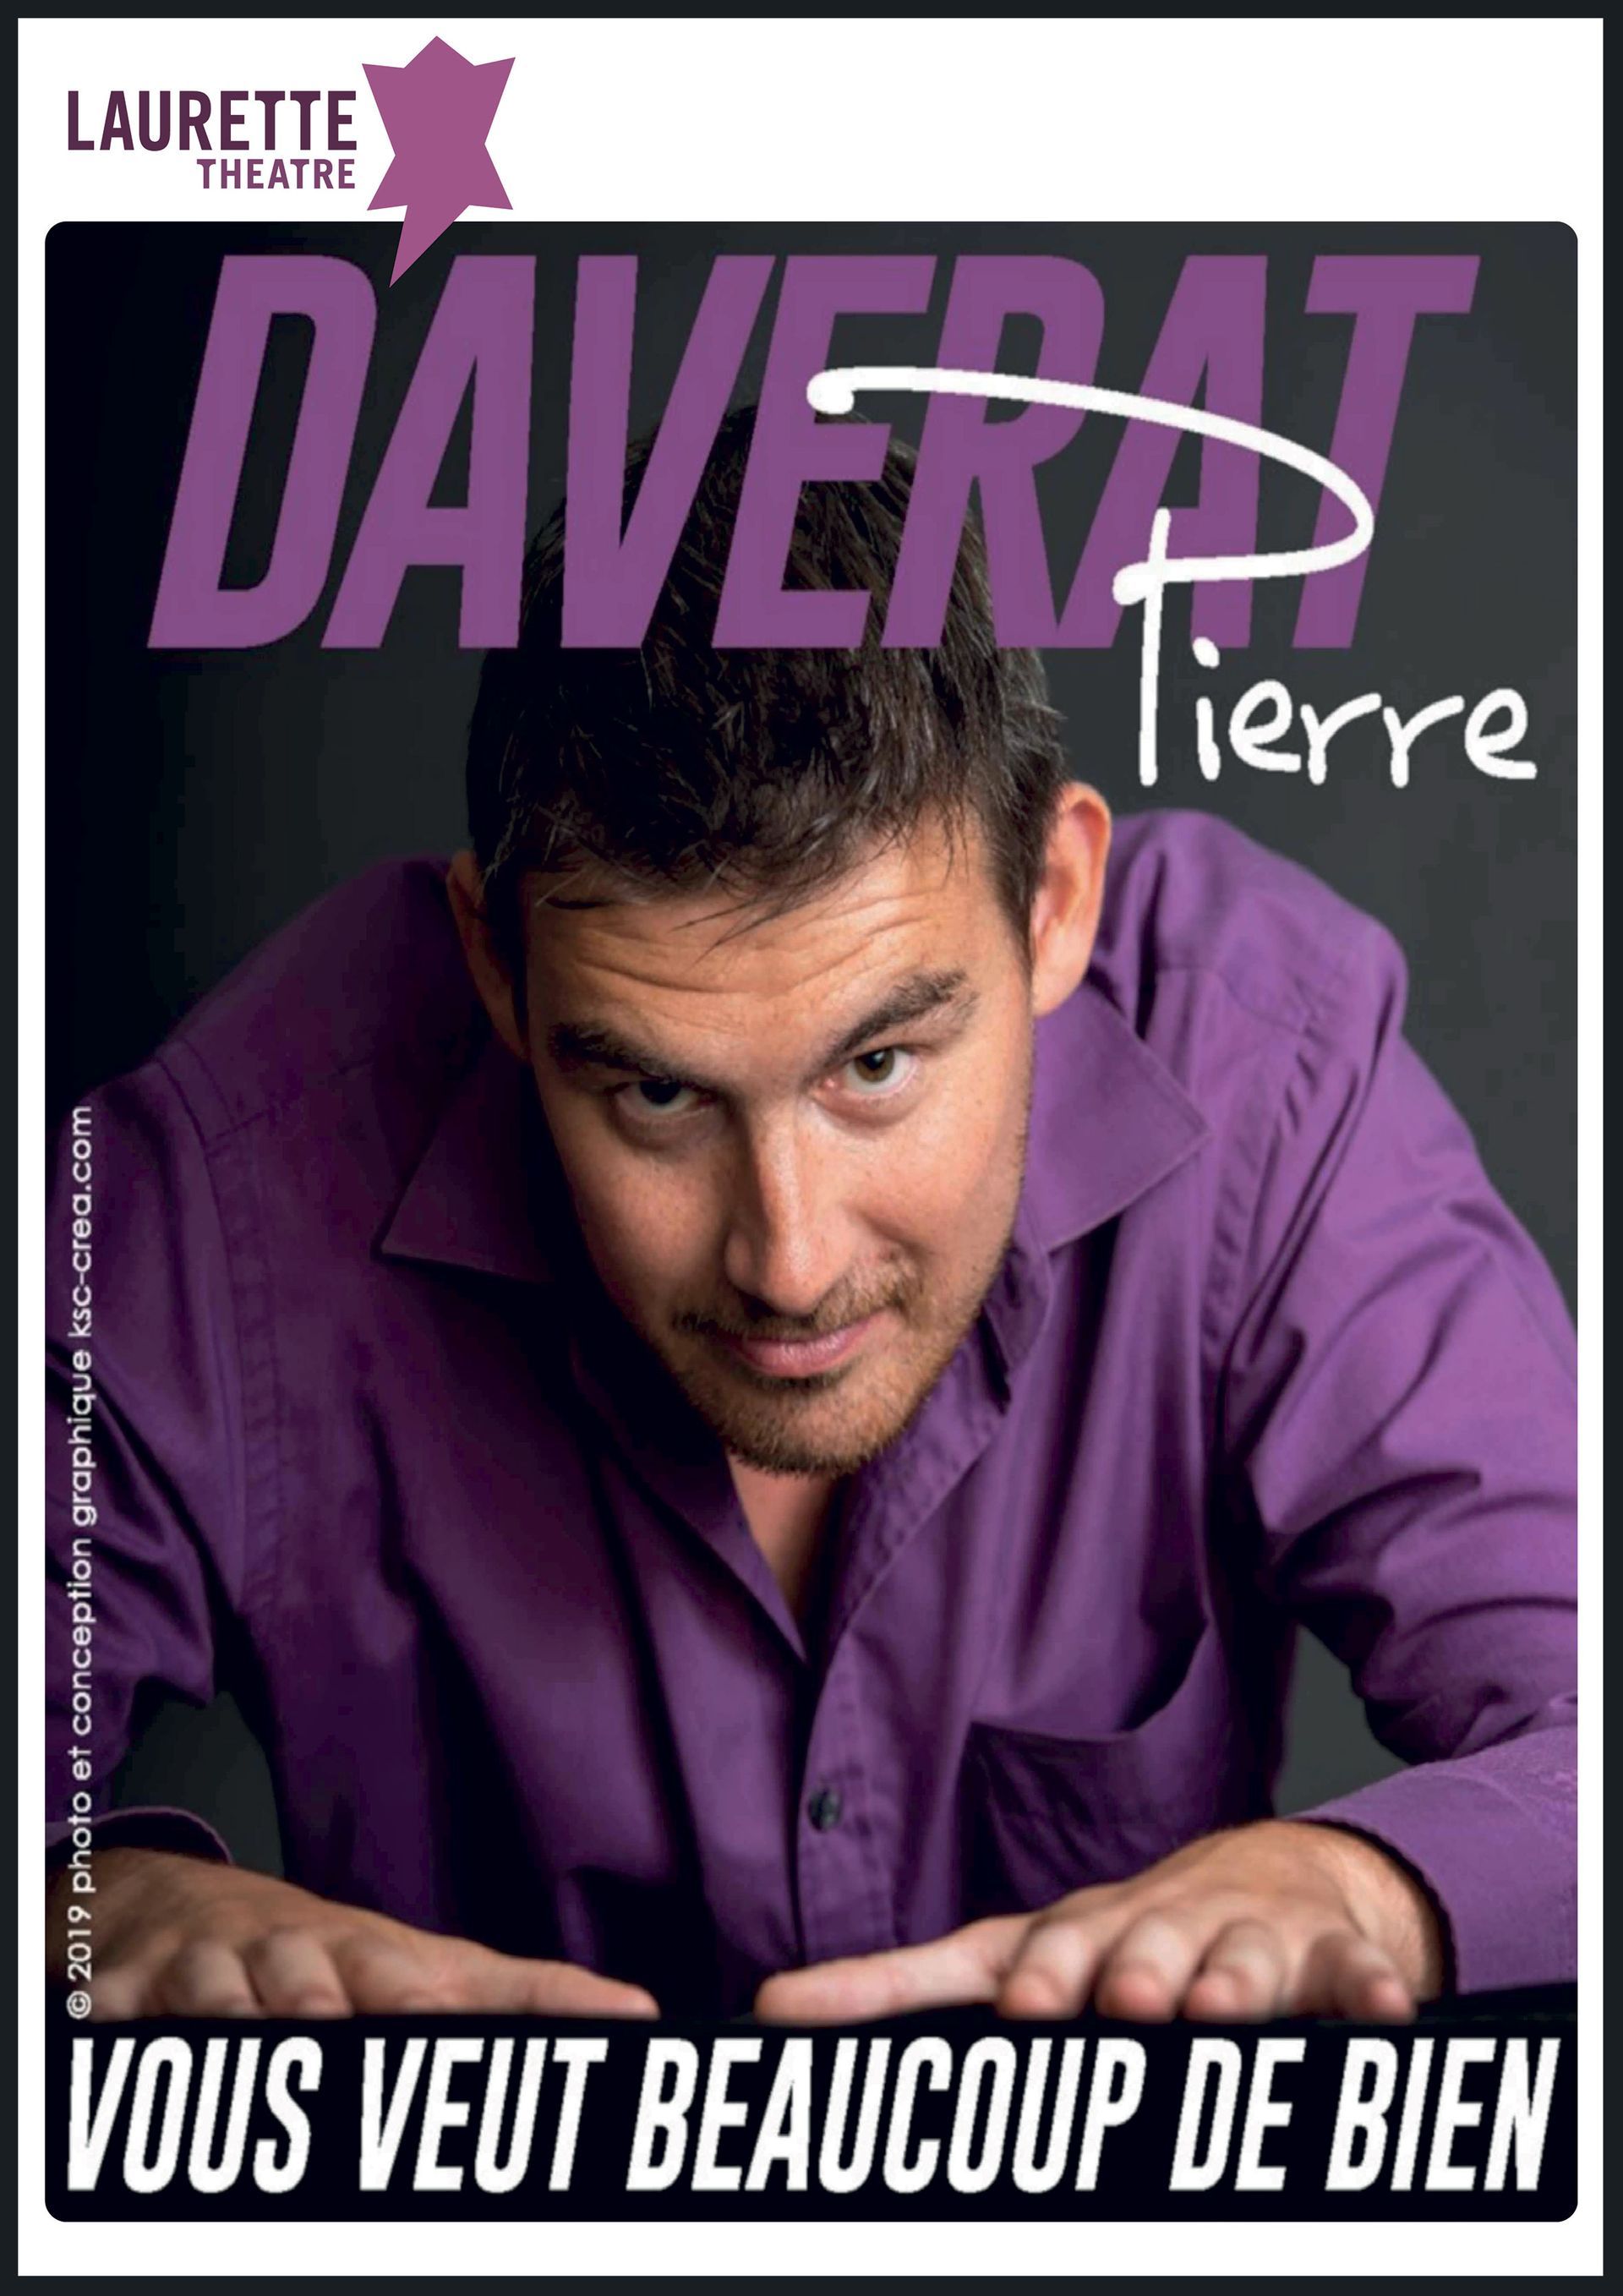 une photo de l'humoriste en chemise violette Pierre daverat qui vous veut beaucoup de bien